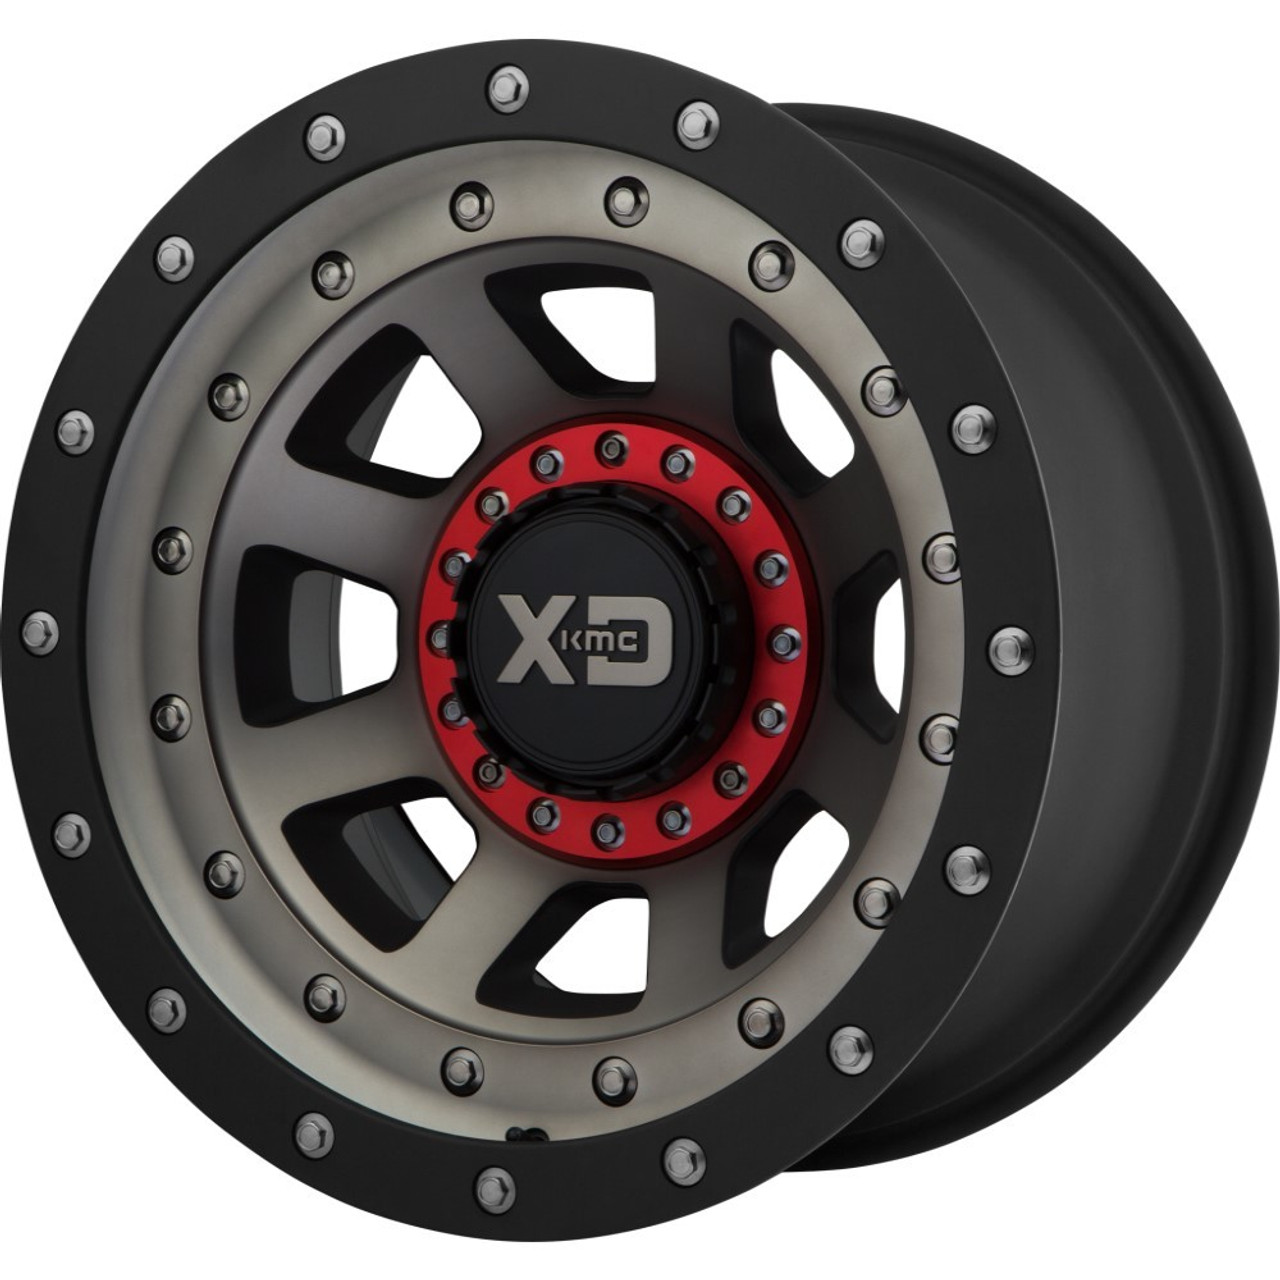 XD XD137 Fmj 20x9 5x5 5x5.5 Satin Black Dark Tint Wheel 20" 0mm Rim